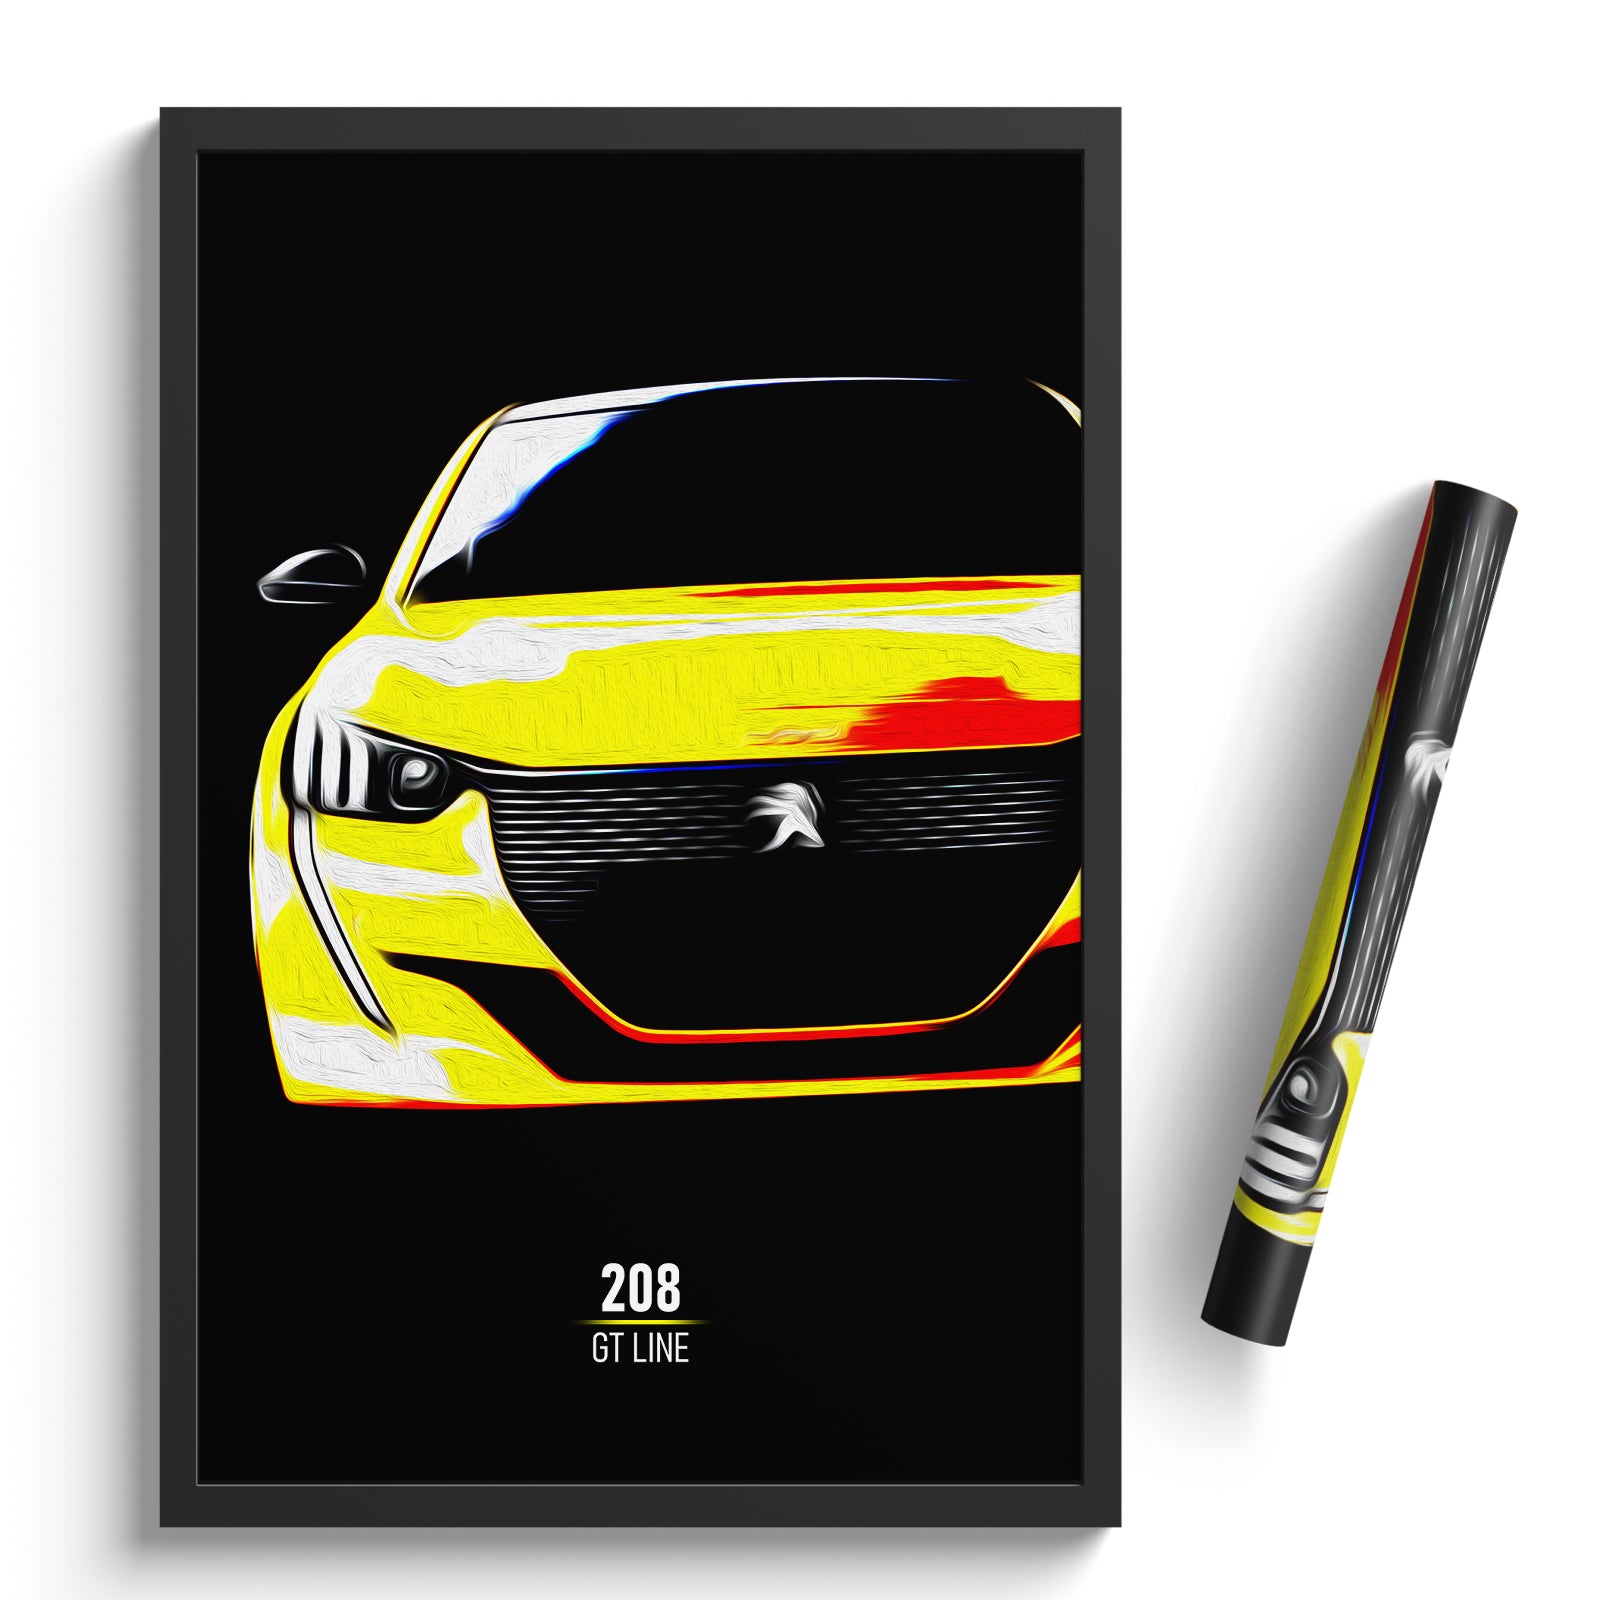 Peugeot 208 GT-Line - Subcompact Car Print